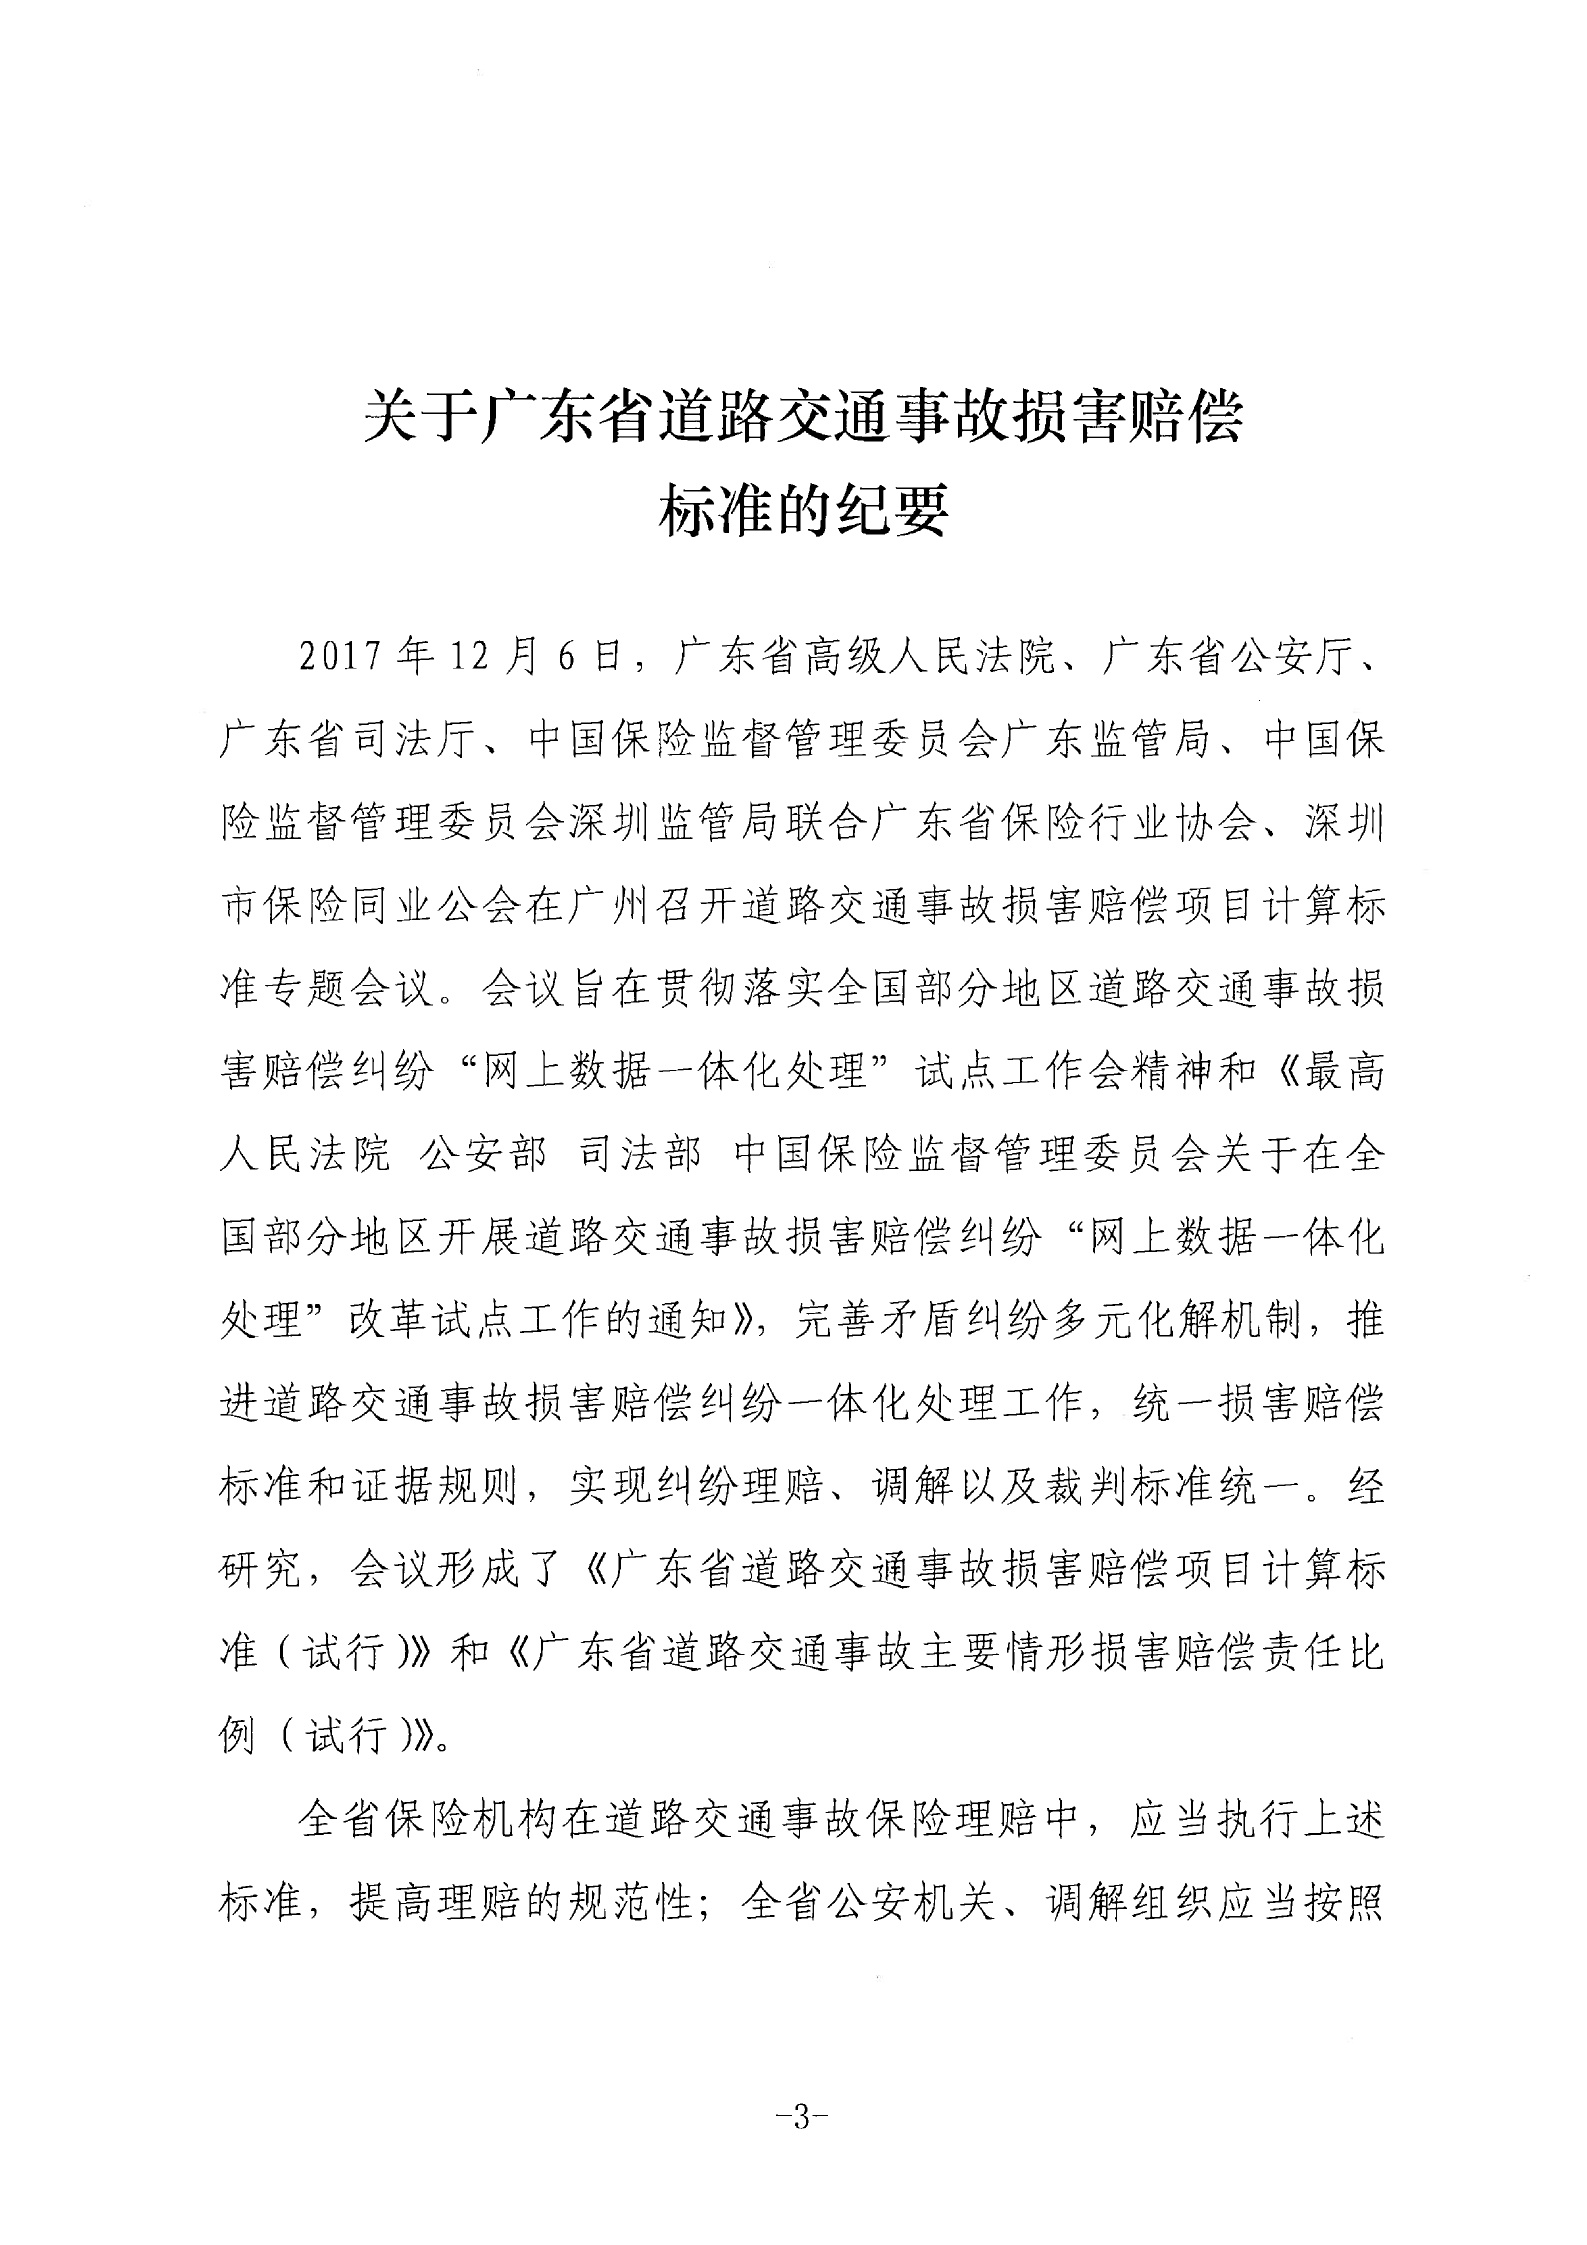 广东高院：关于广东省道路交通事故损害赔偿标准的纪要（2018年）